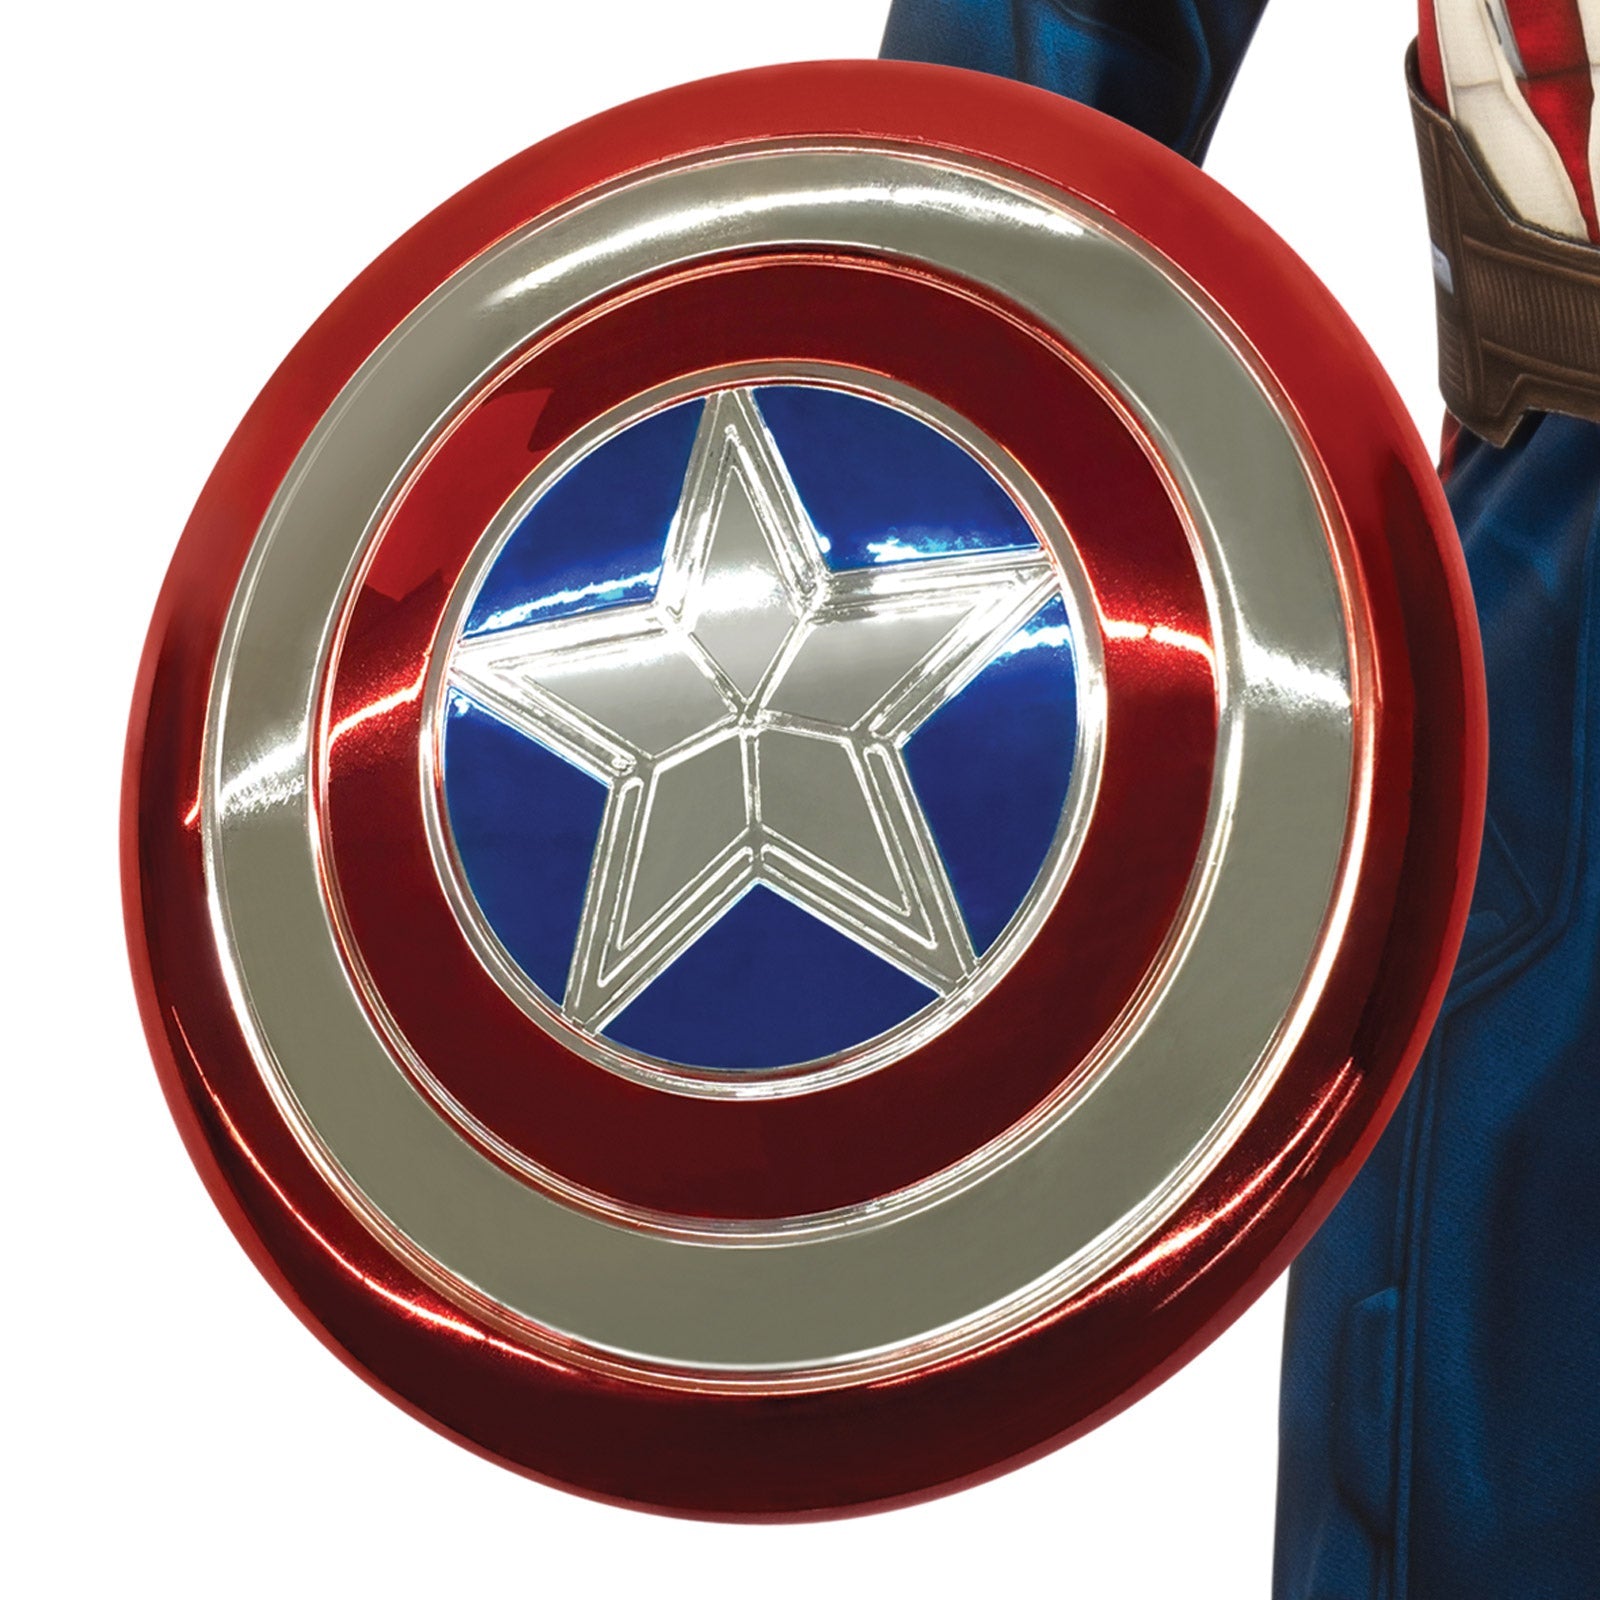 Captain America Premium Costume Kids